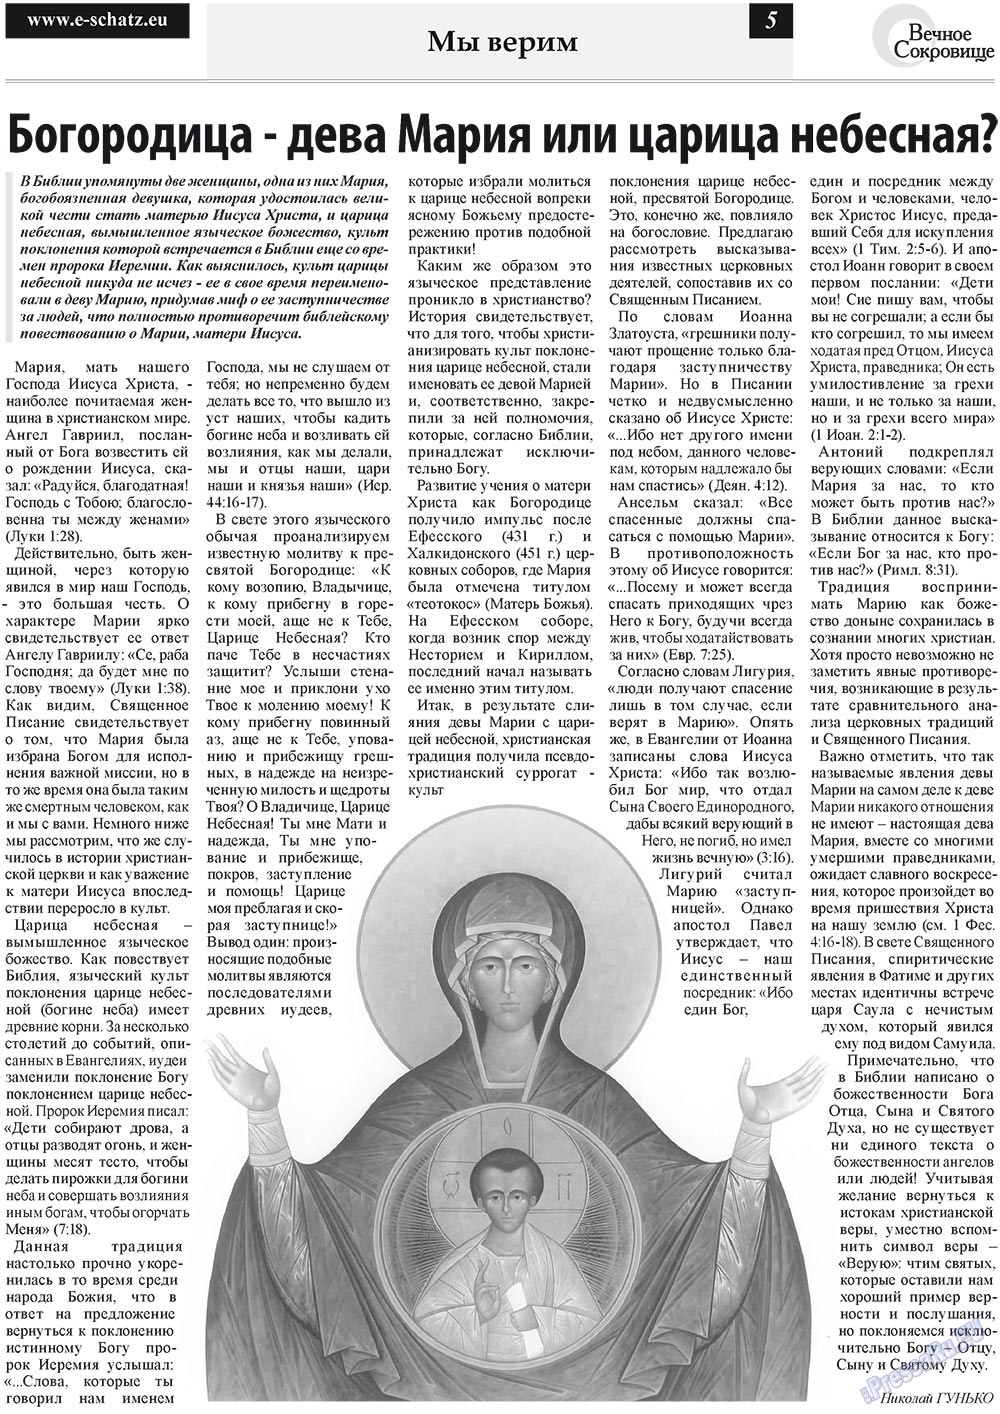 Вечное сокровище, газета. 2011 №3 стр.5